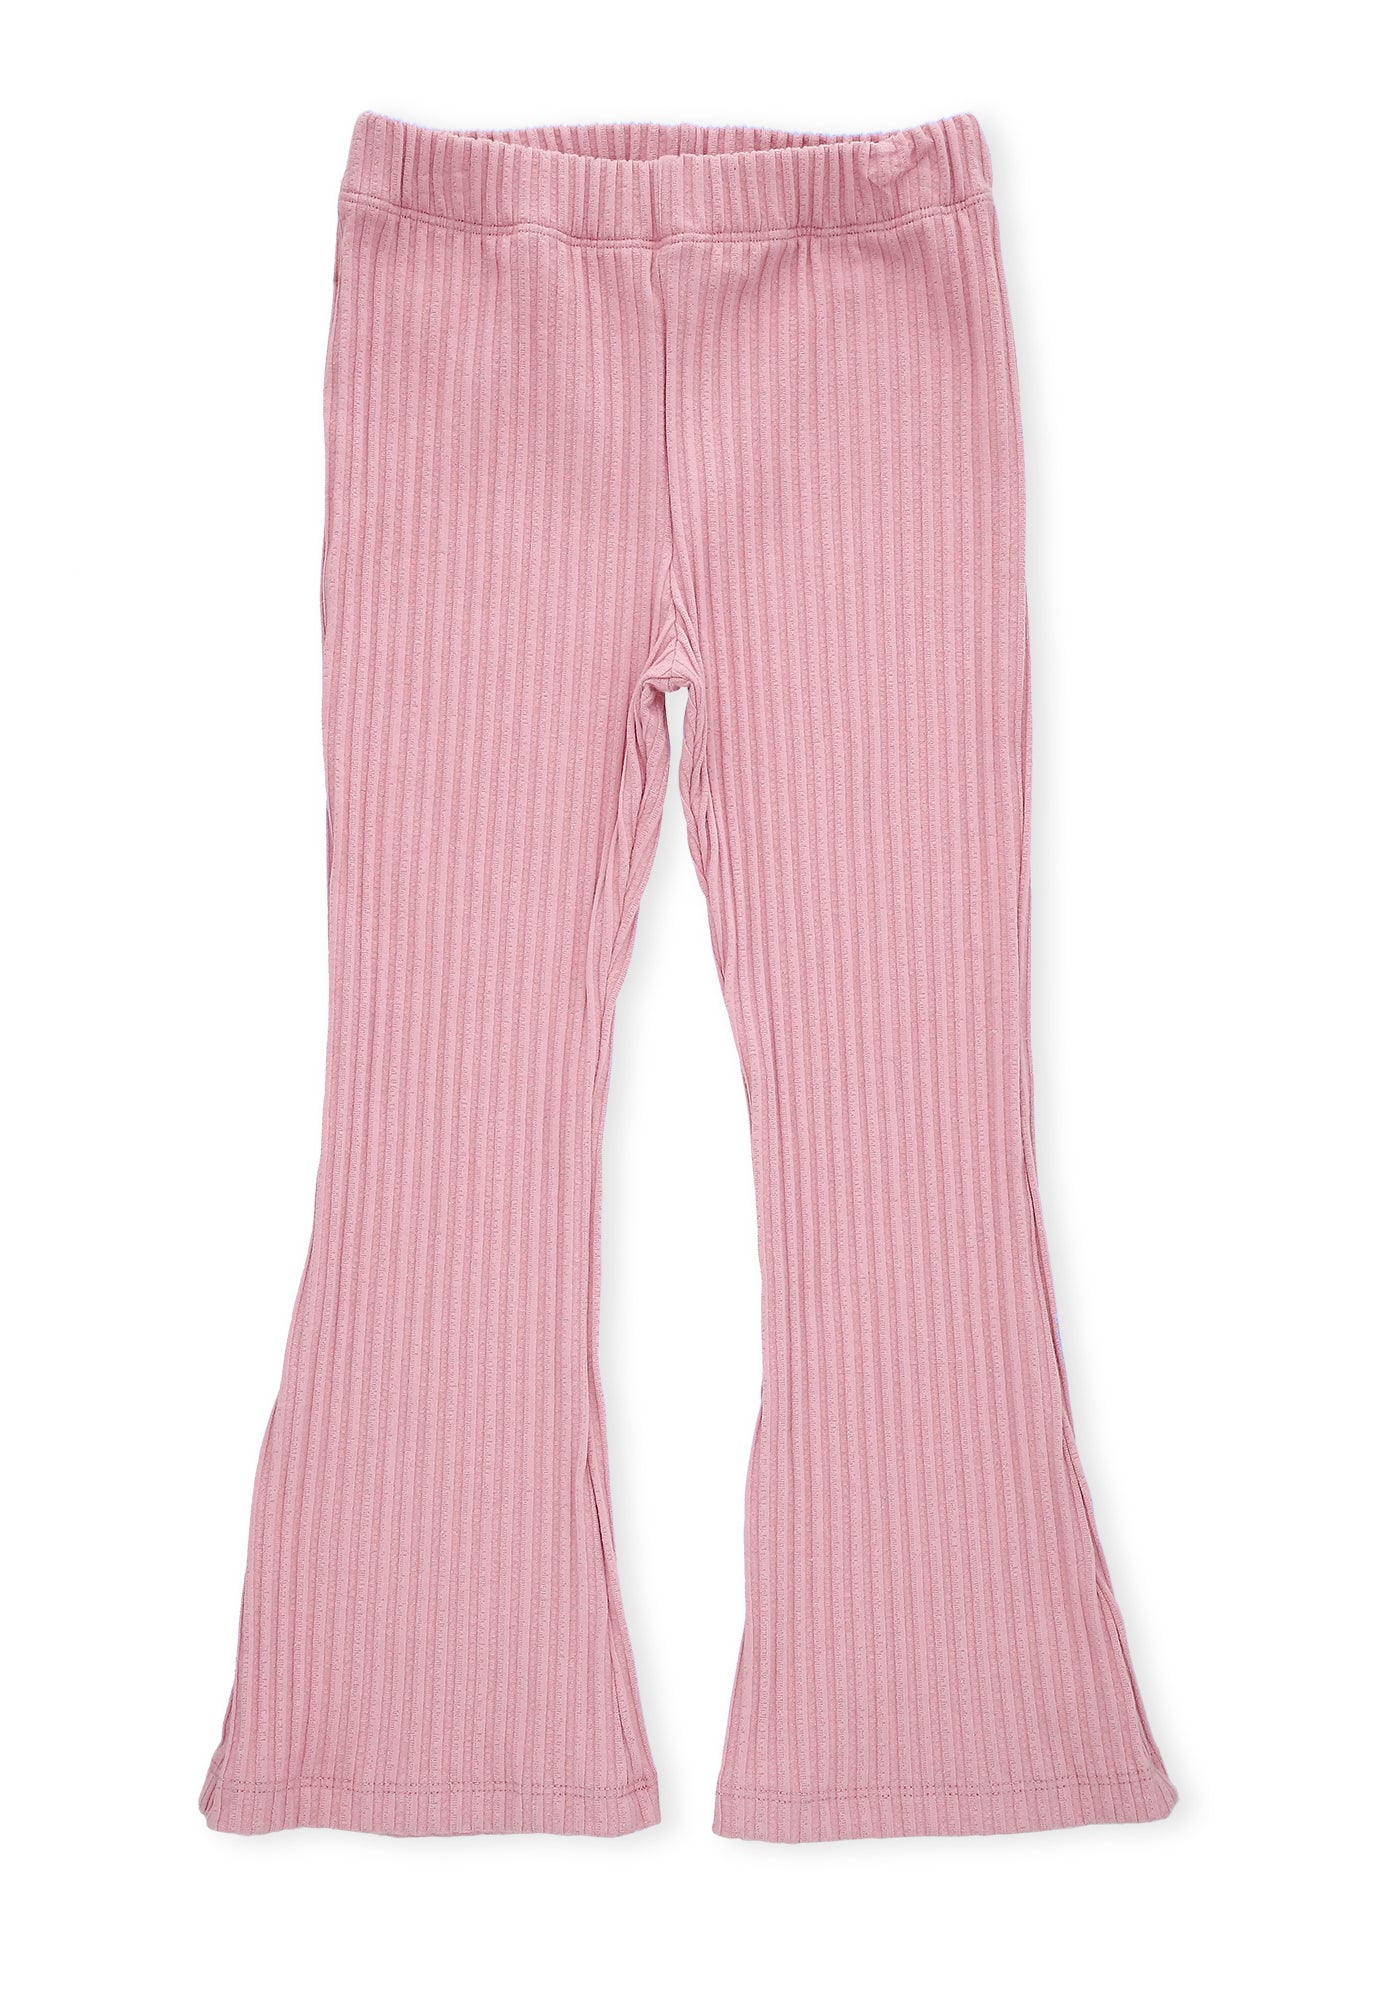 Pantalón rosado claro fondo entero, con bota ancha y pretina resortada para bebé niña